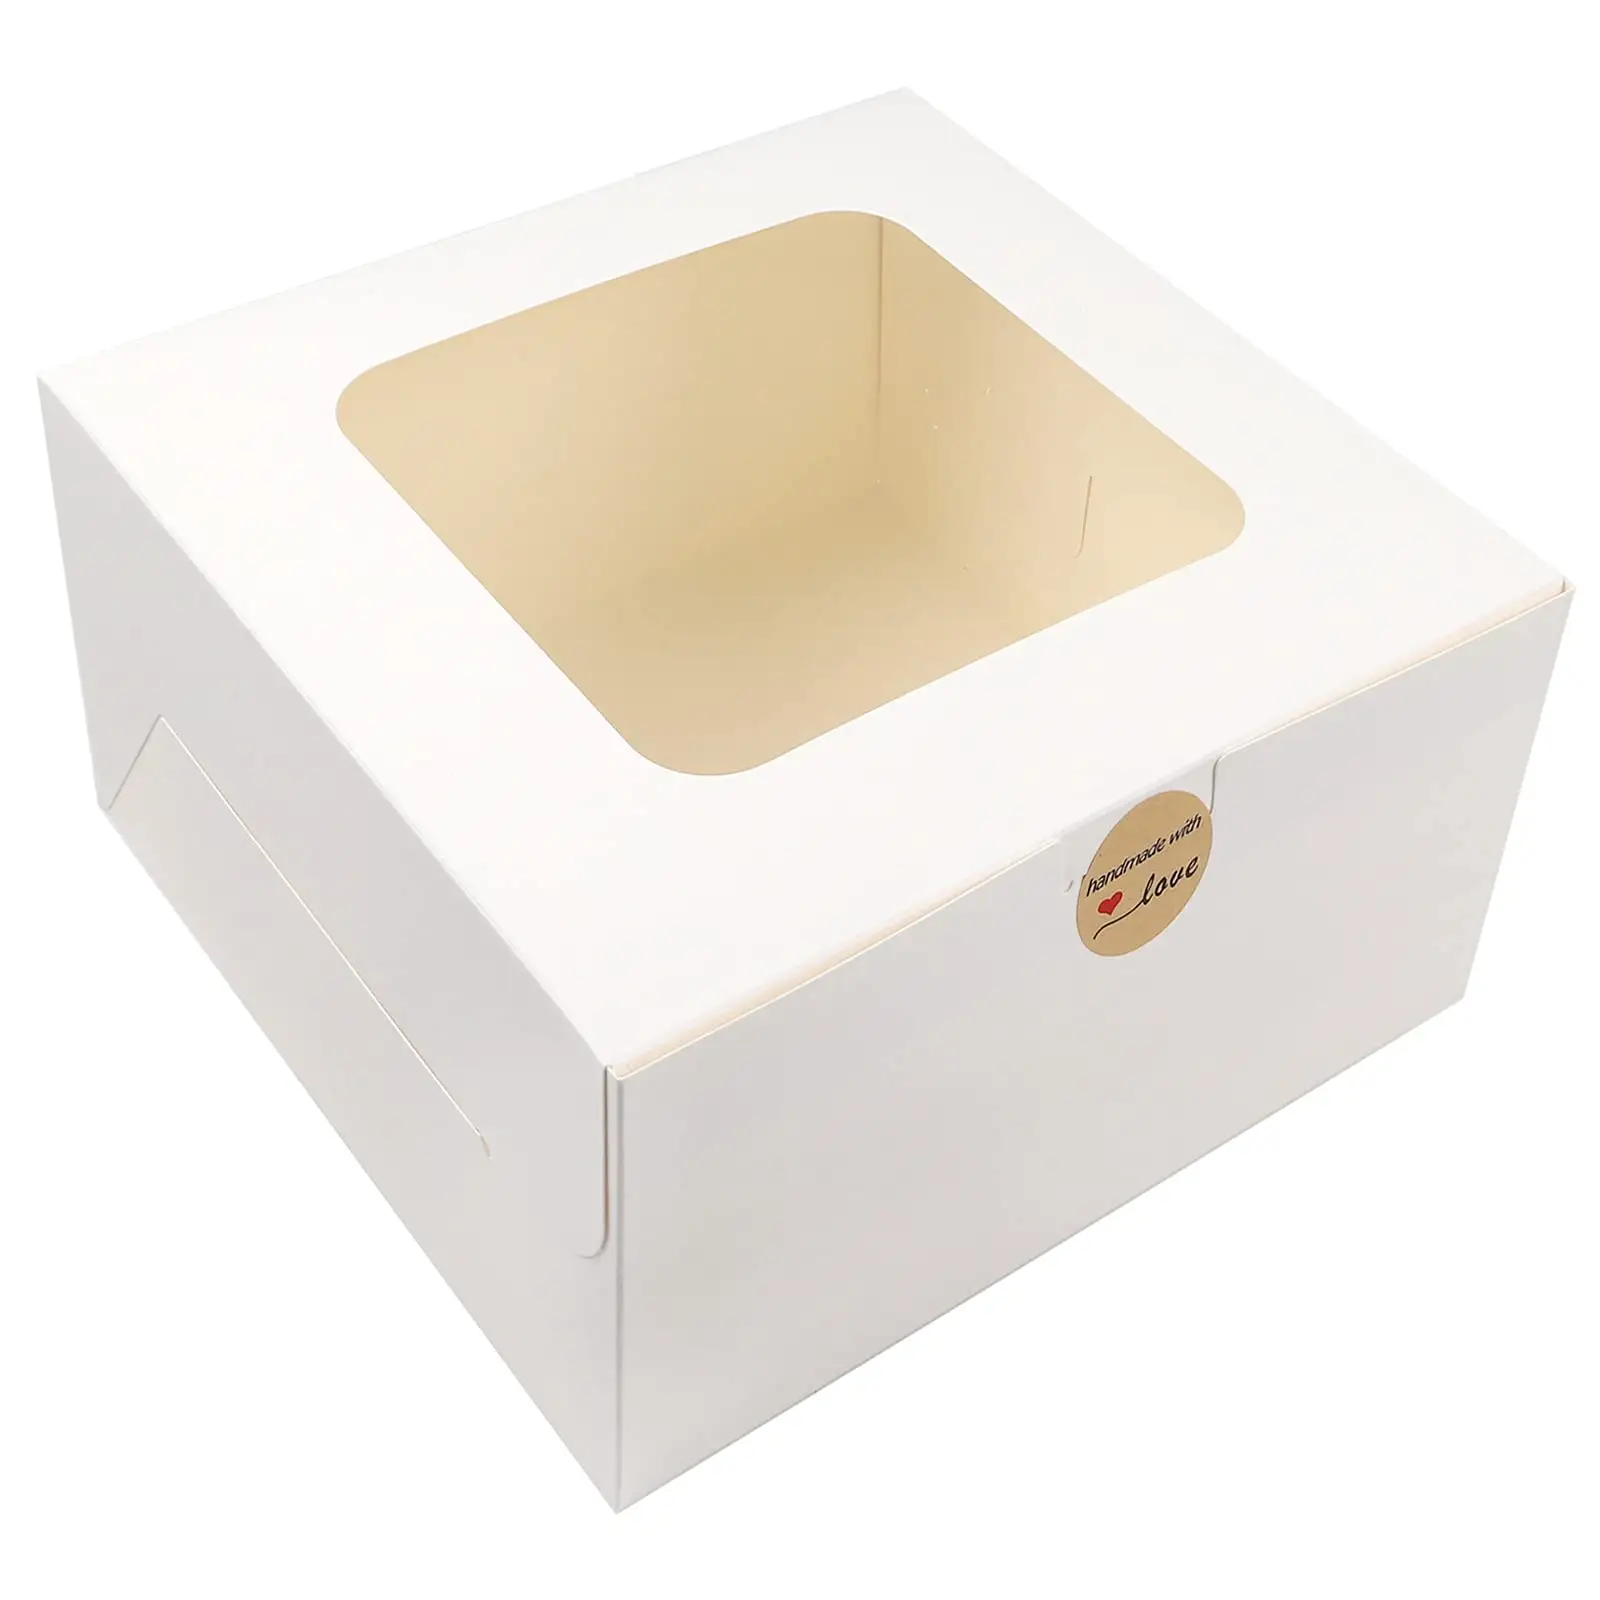 Beyaz kağıt ekmek kutusu kare karton tek kullanımlık 12x12x6 12 inç ambalaj kek kutusu ile pencere